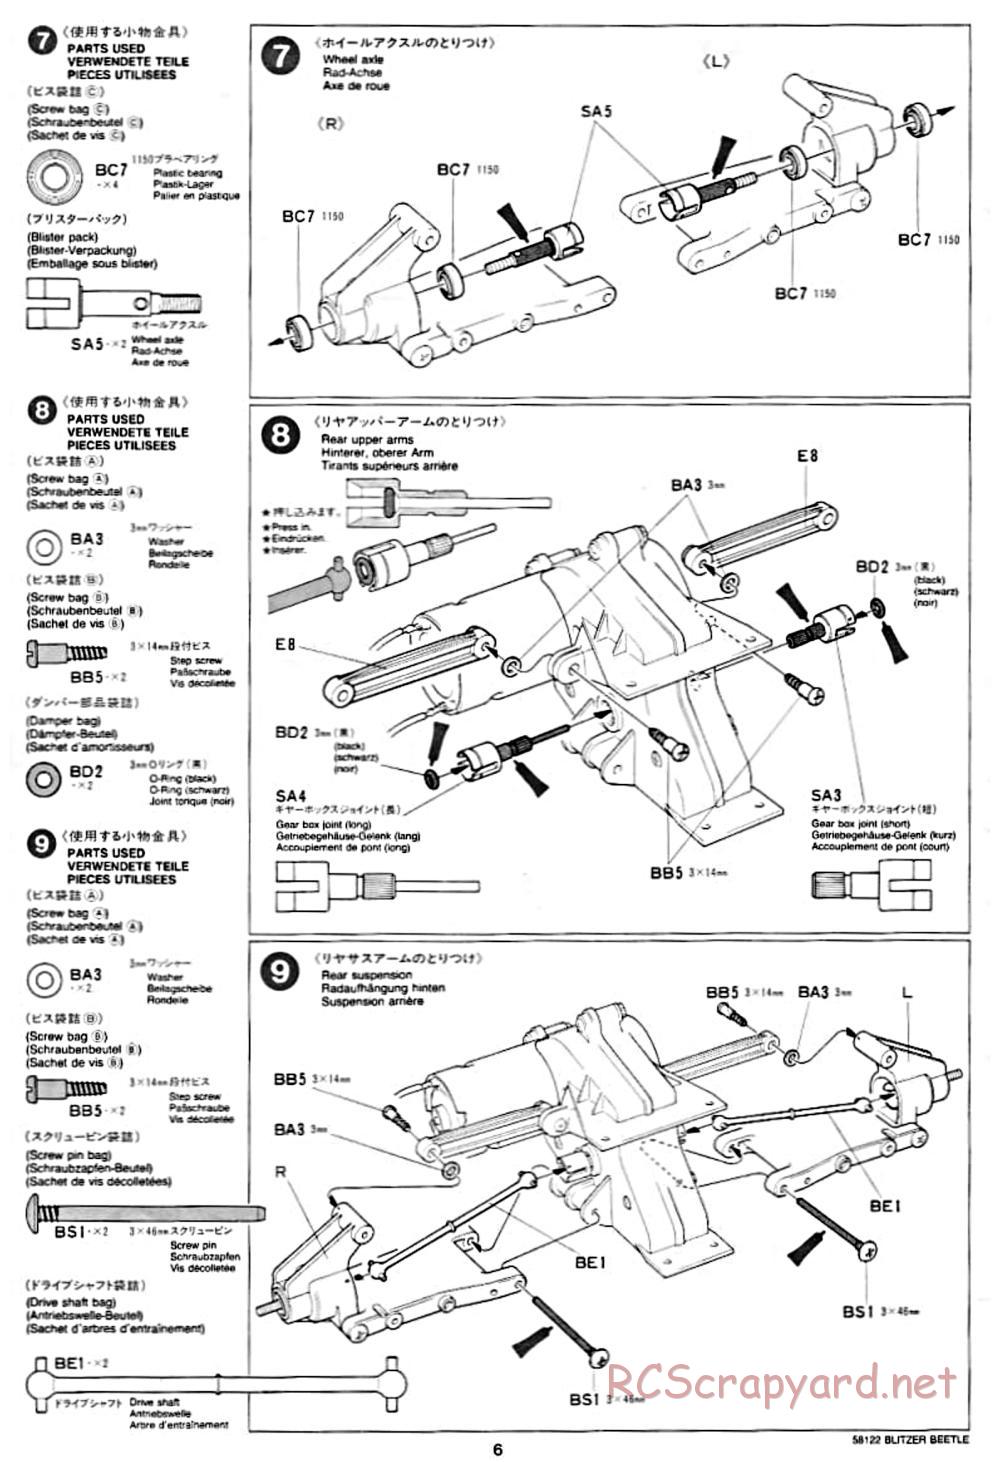 Tamiya - Blitzer Beetle Chassis - Manual - Page 6